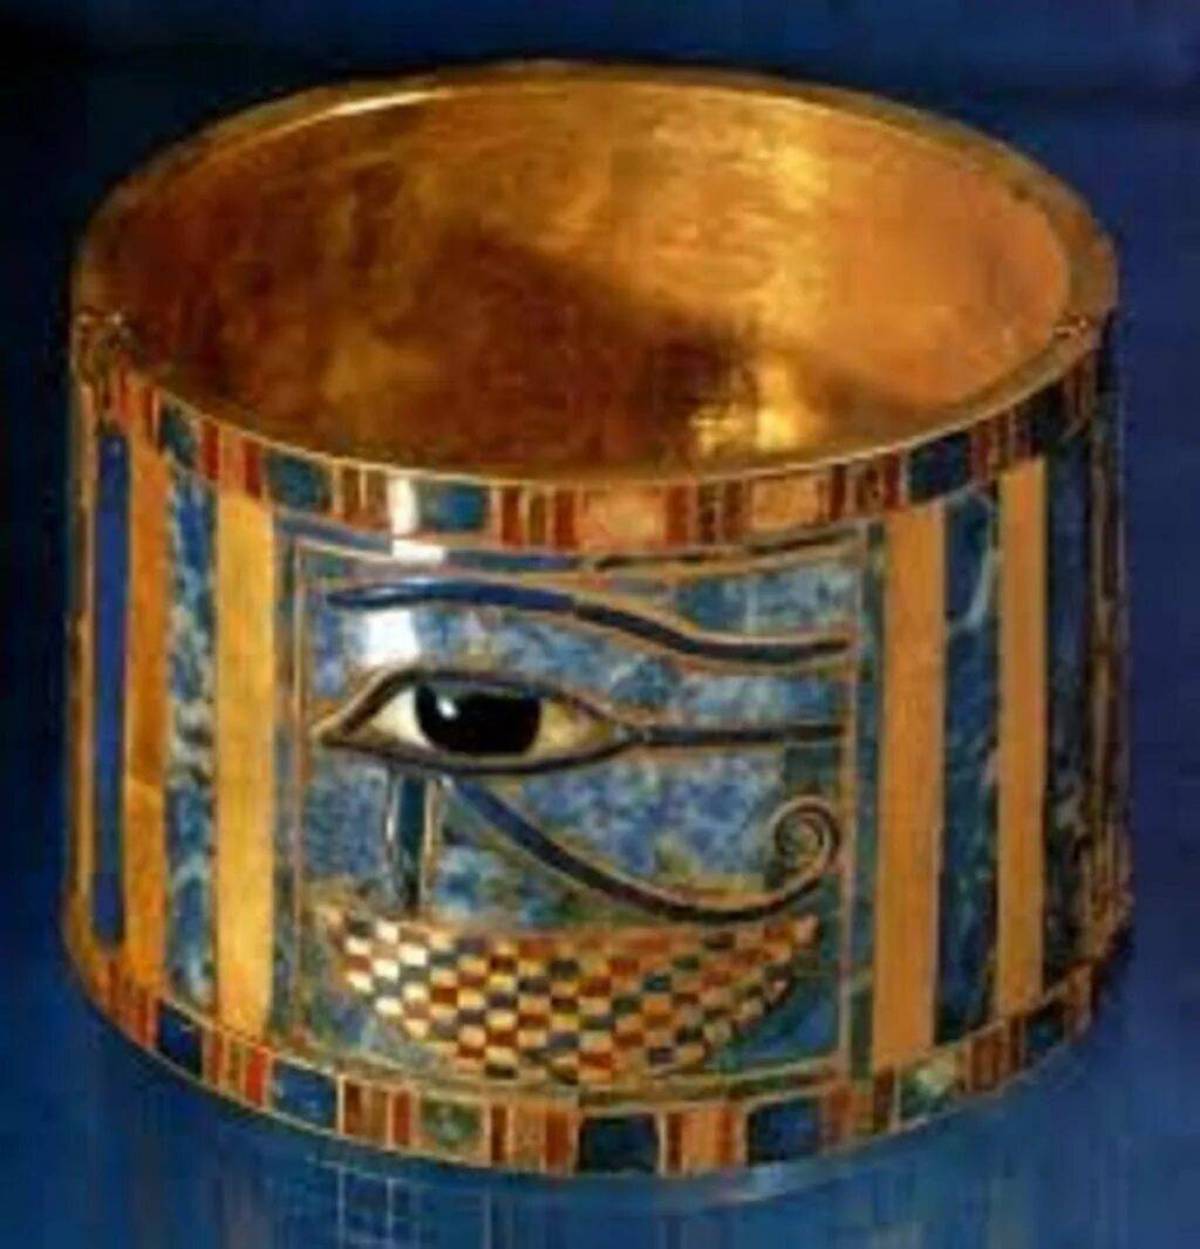 ювелирные украшения египта